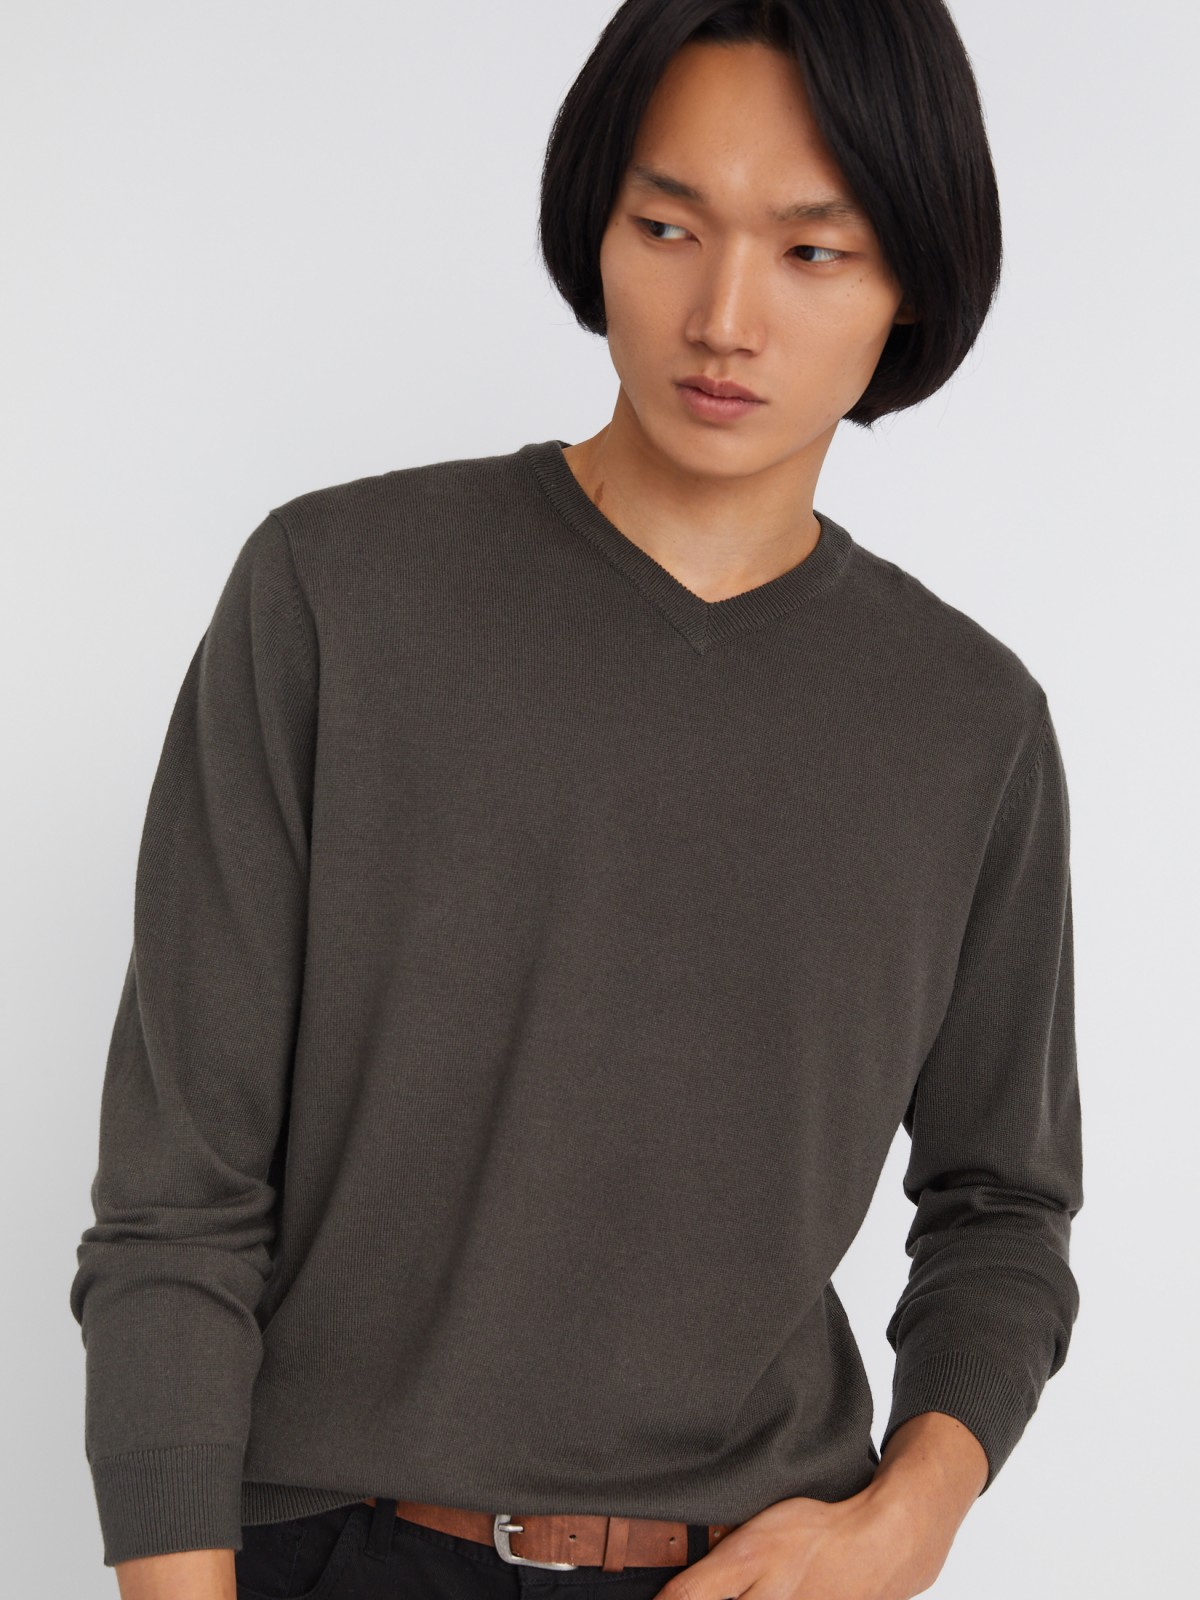 Шерстяной трикотажный пуловер с треугольным вырезом и длинным рукавом zolla 013346163042, цвет темно-серый, размер M - фото 3